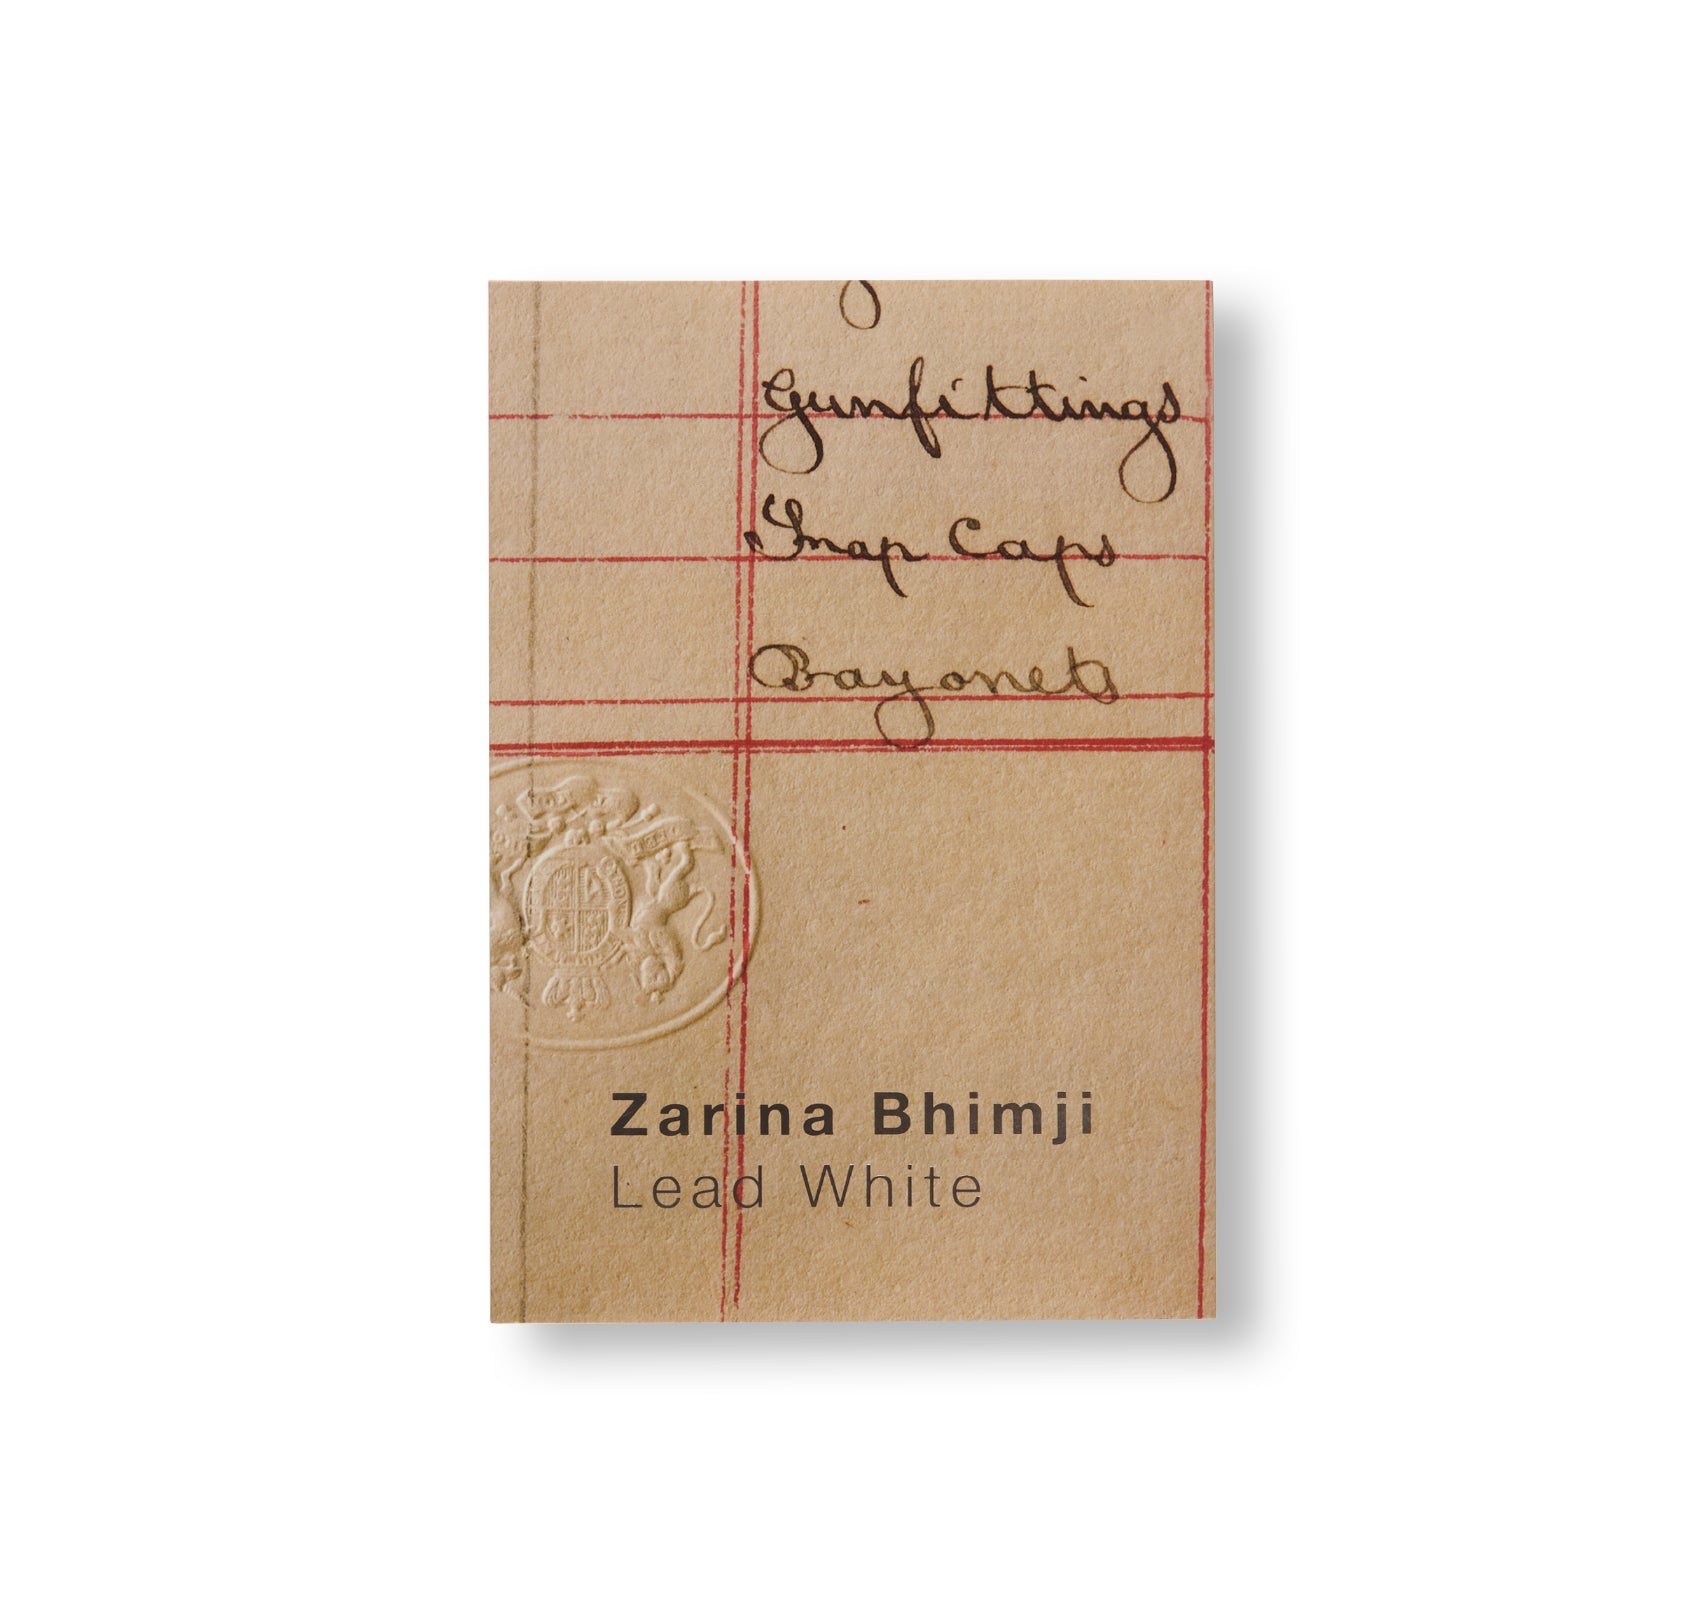 LEAD WHITE by Zarina Bhimji